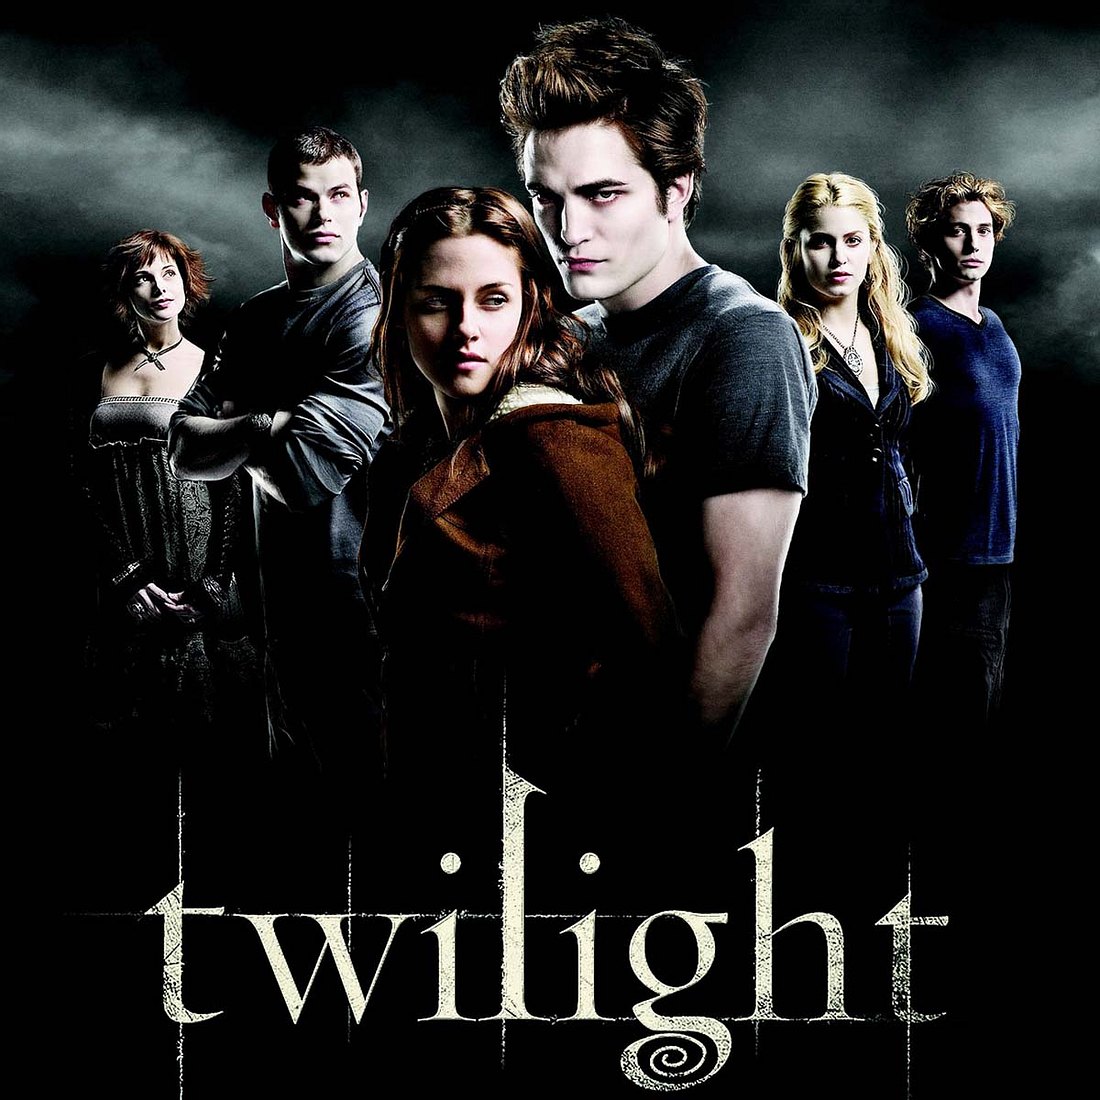 Alle Twilight-Teile sind derzeit auf Netflix zum streamen verfügbar!